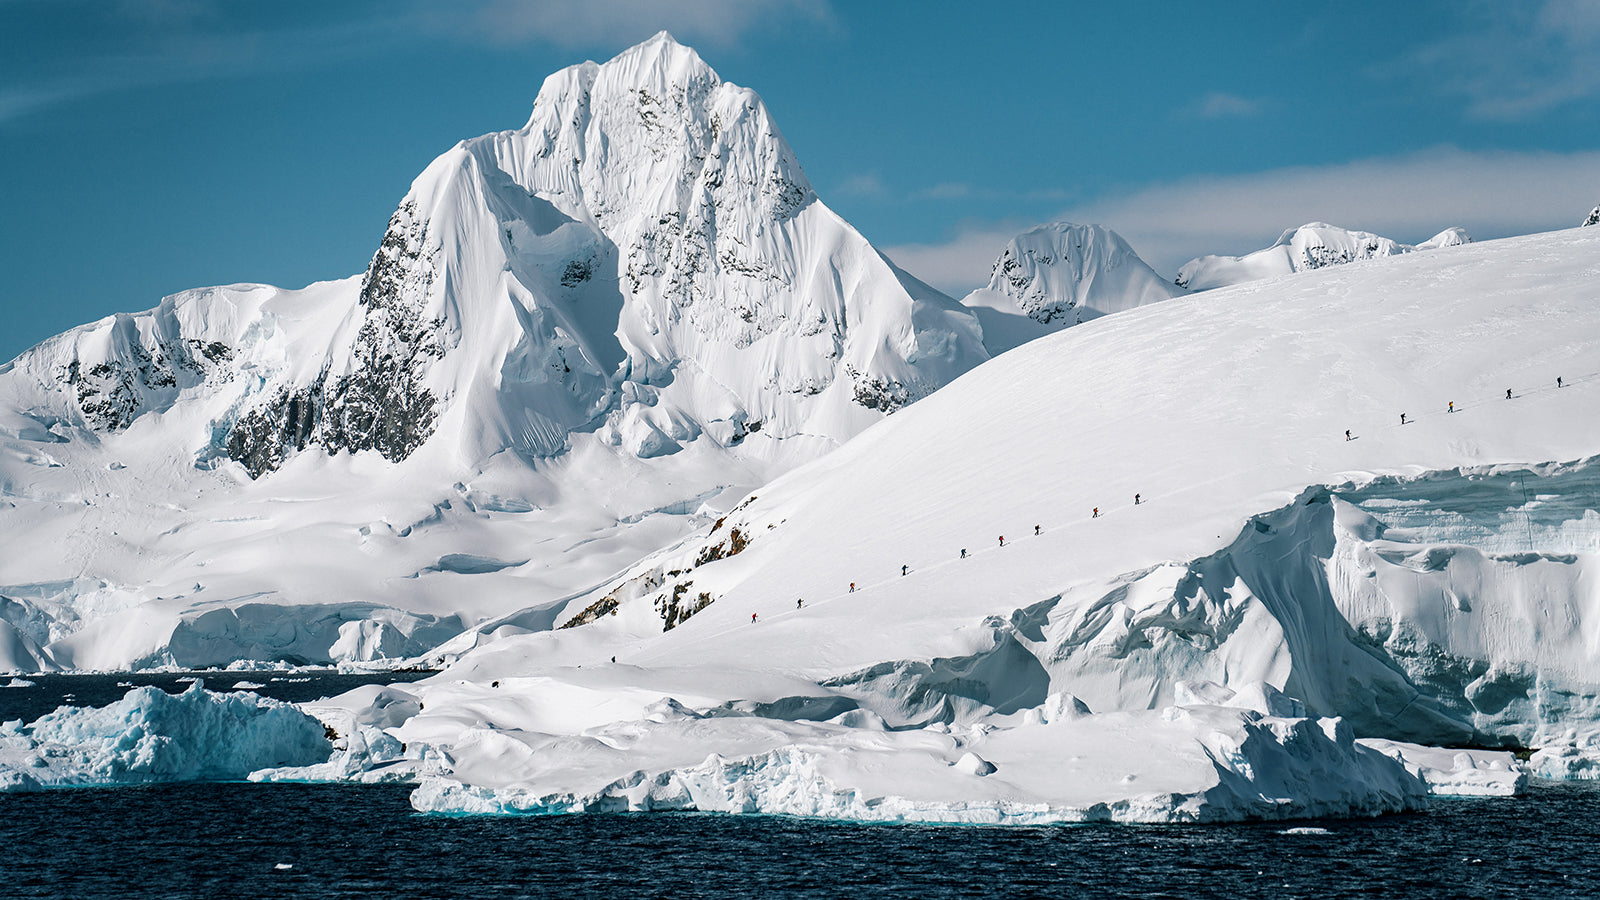 Antarctica: Through the Lens